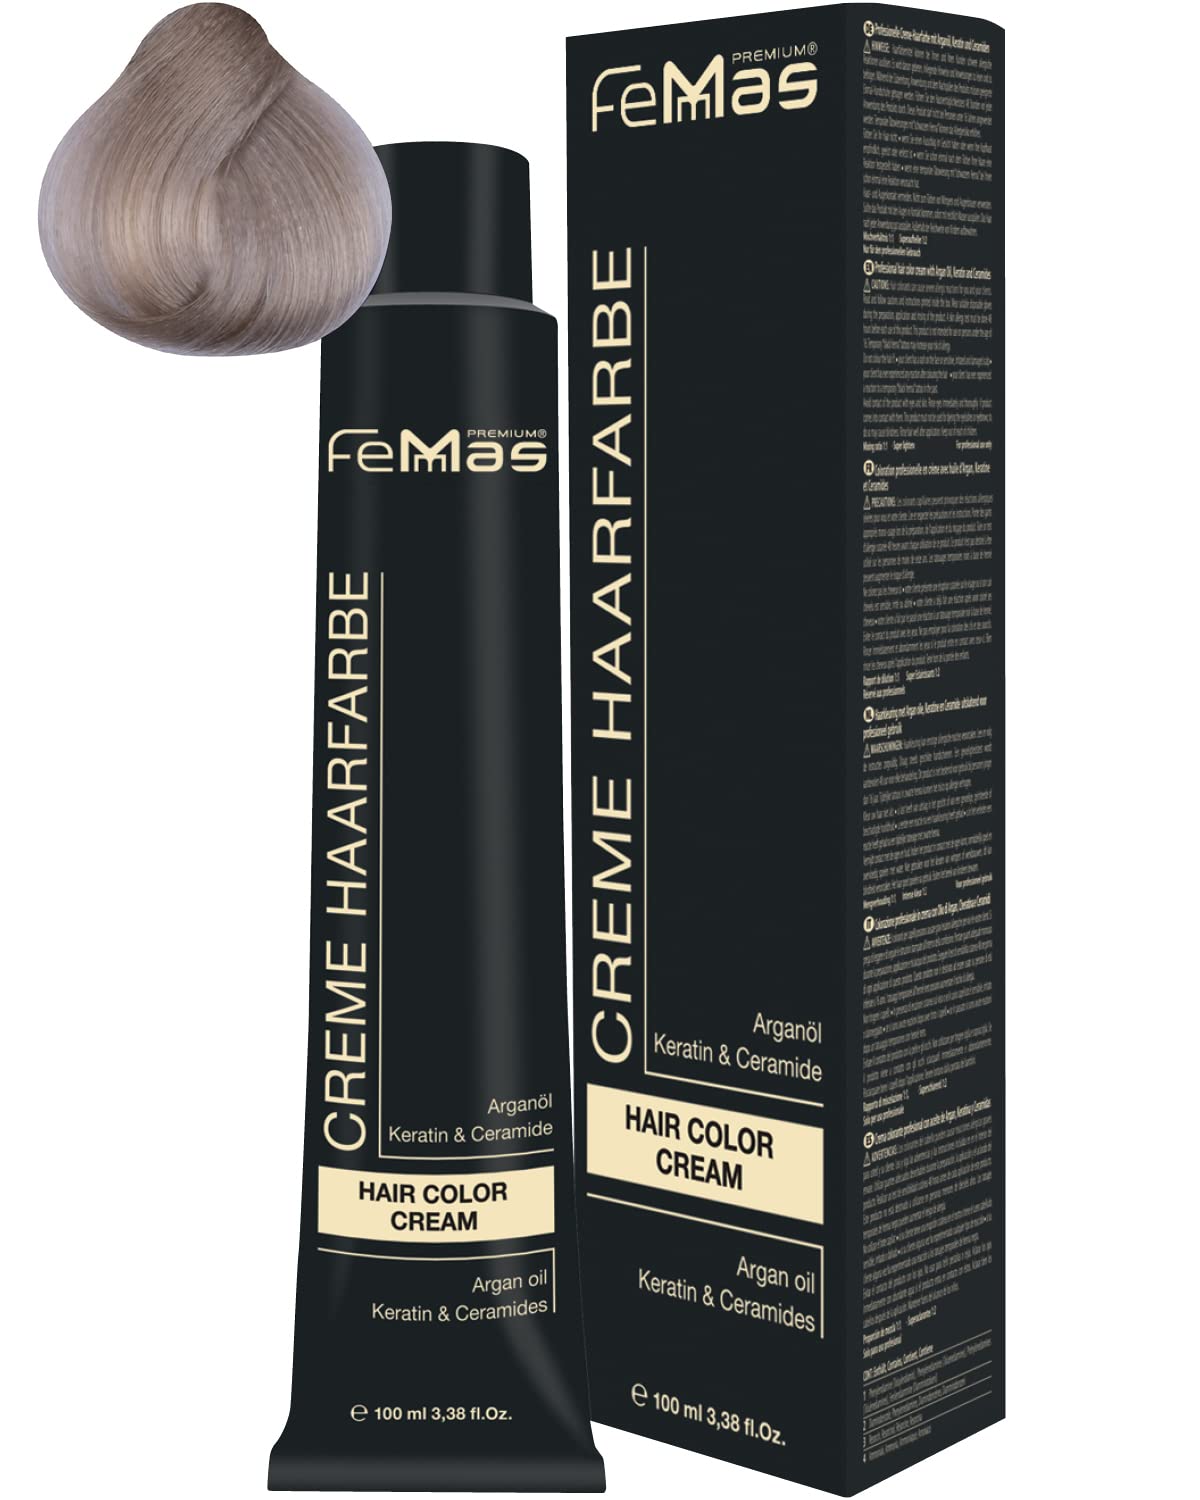 Femmas Hair Colour Cream, 100 ml Hair Colour with Argan Oil, Keratin & Ceramide (Platinum Blonde Sand 11.7), 11.7 ‎platinum